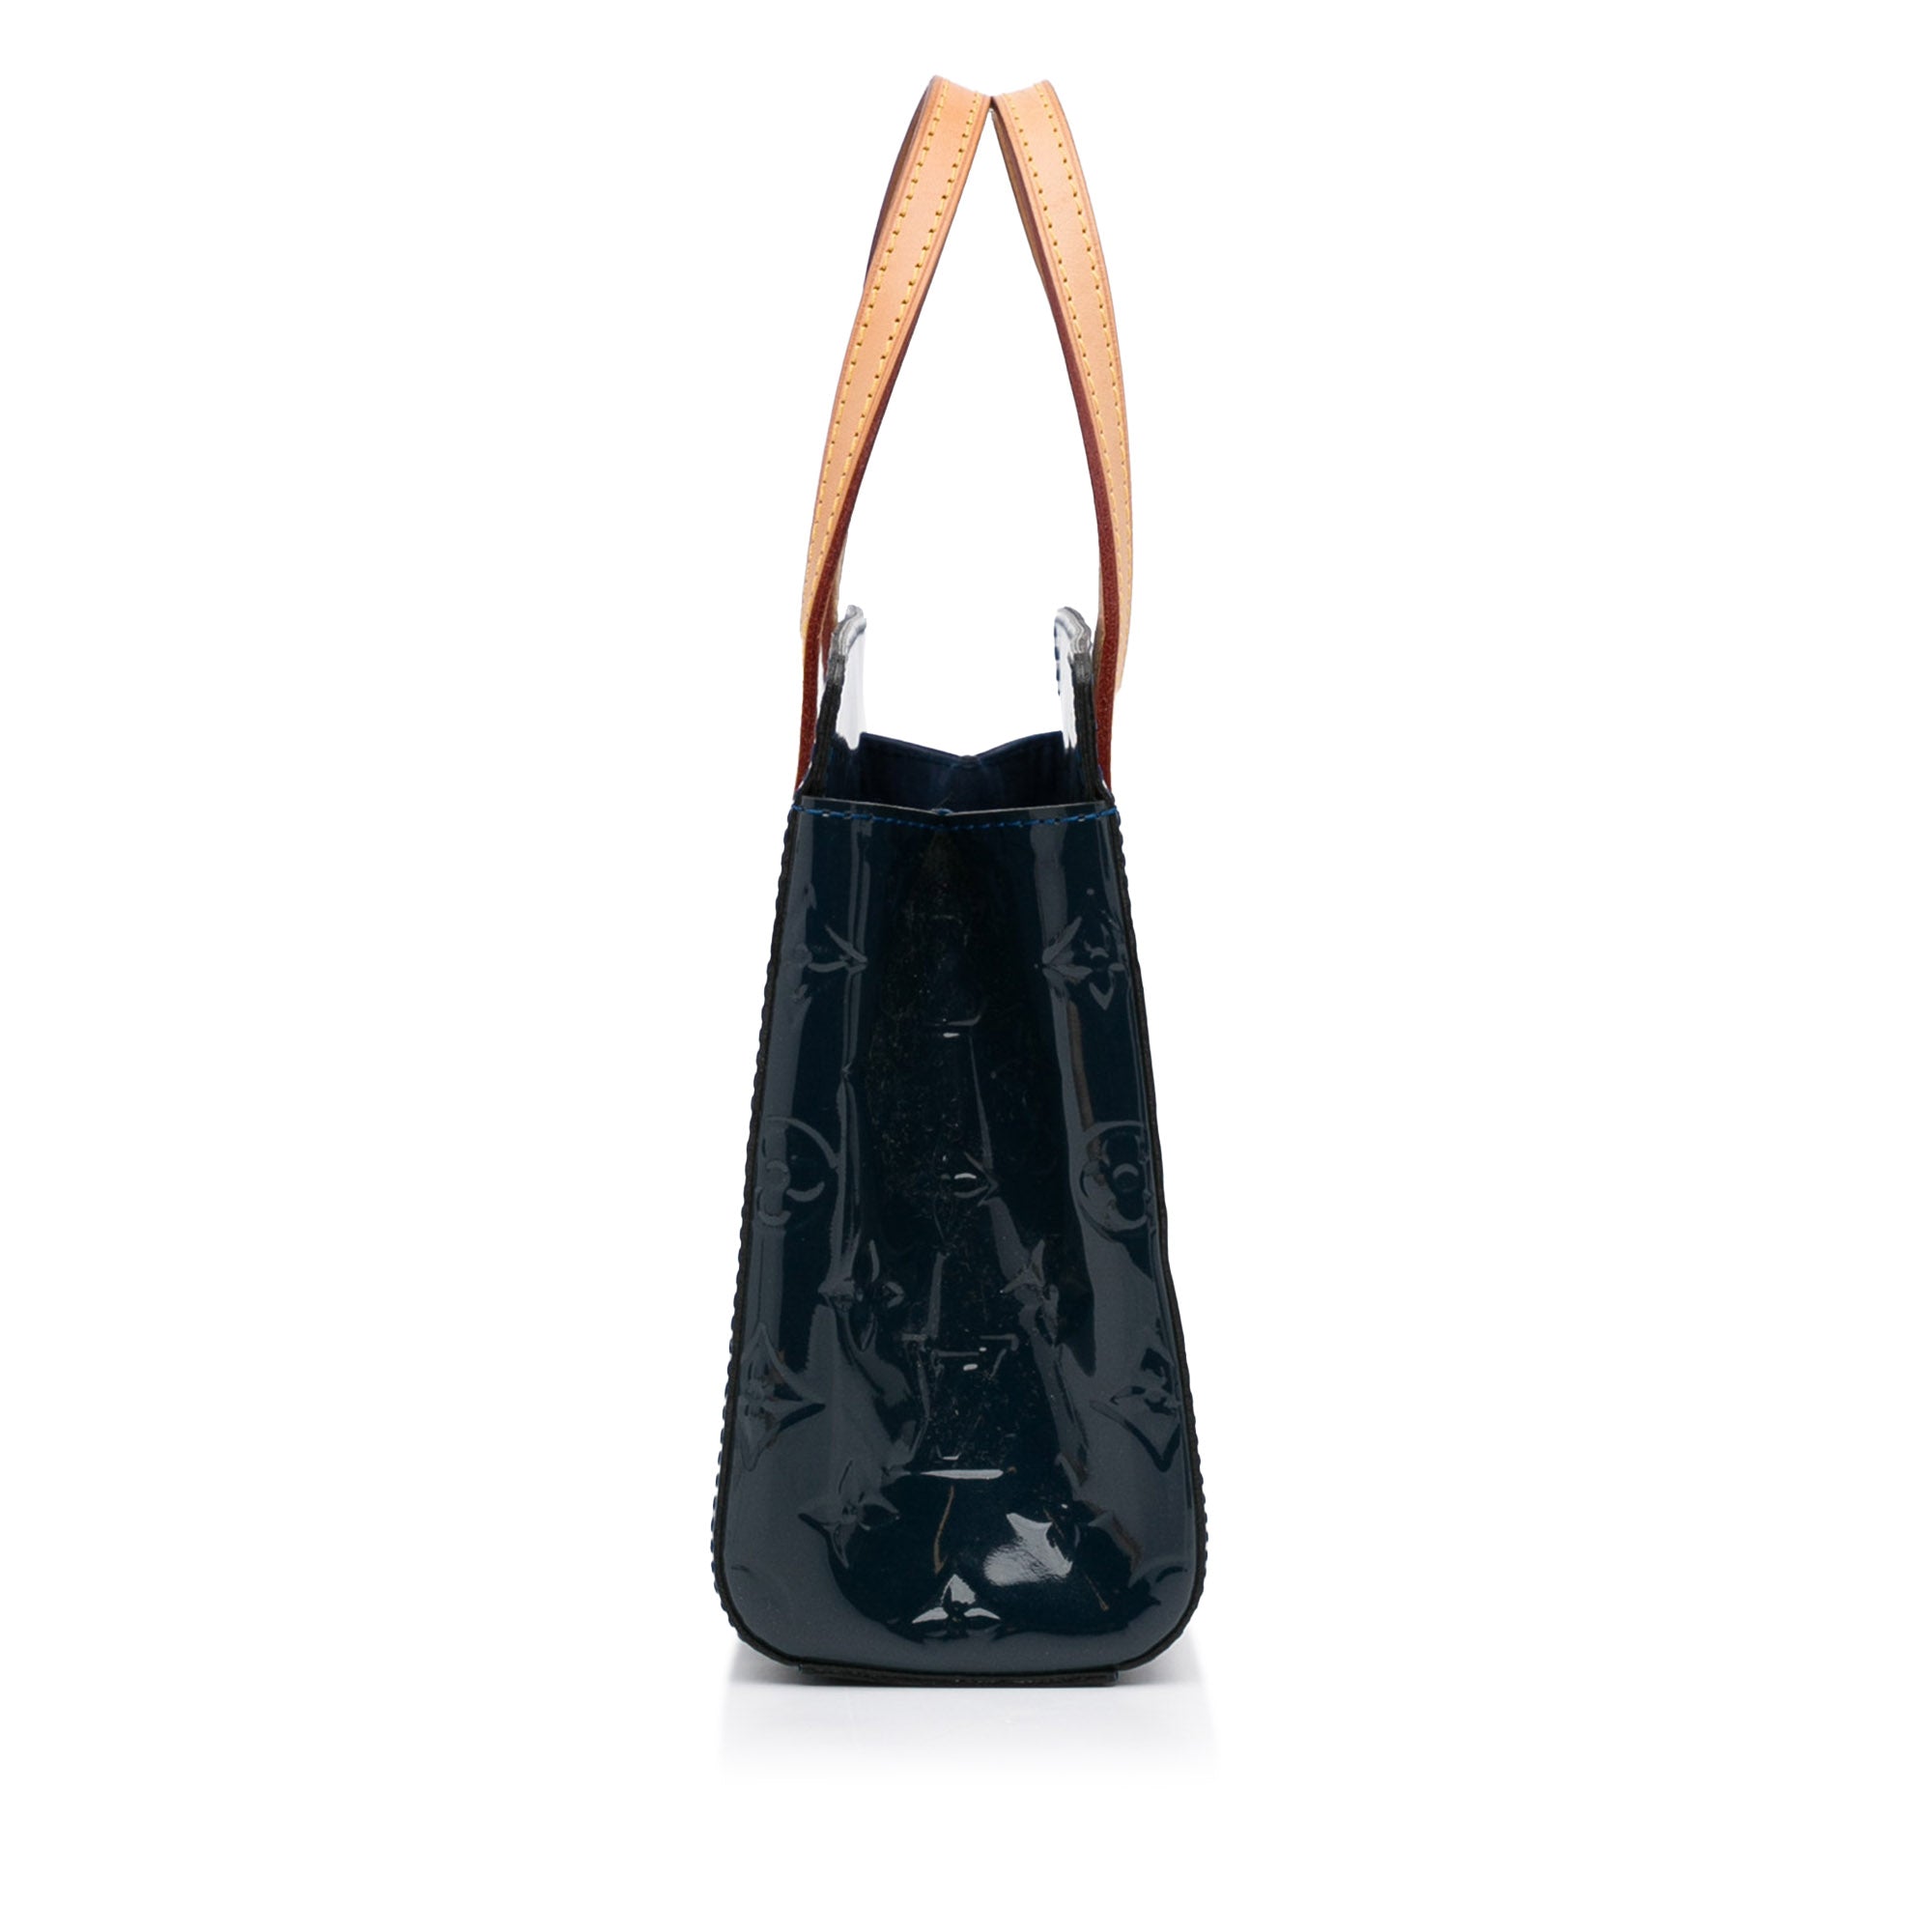 Blue Louis Vuitton Vernis Catalina Ikat BB Handbag